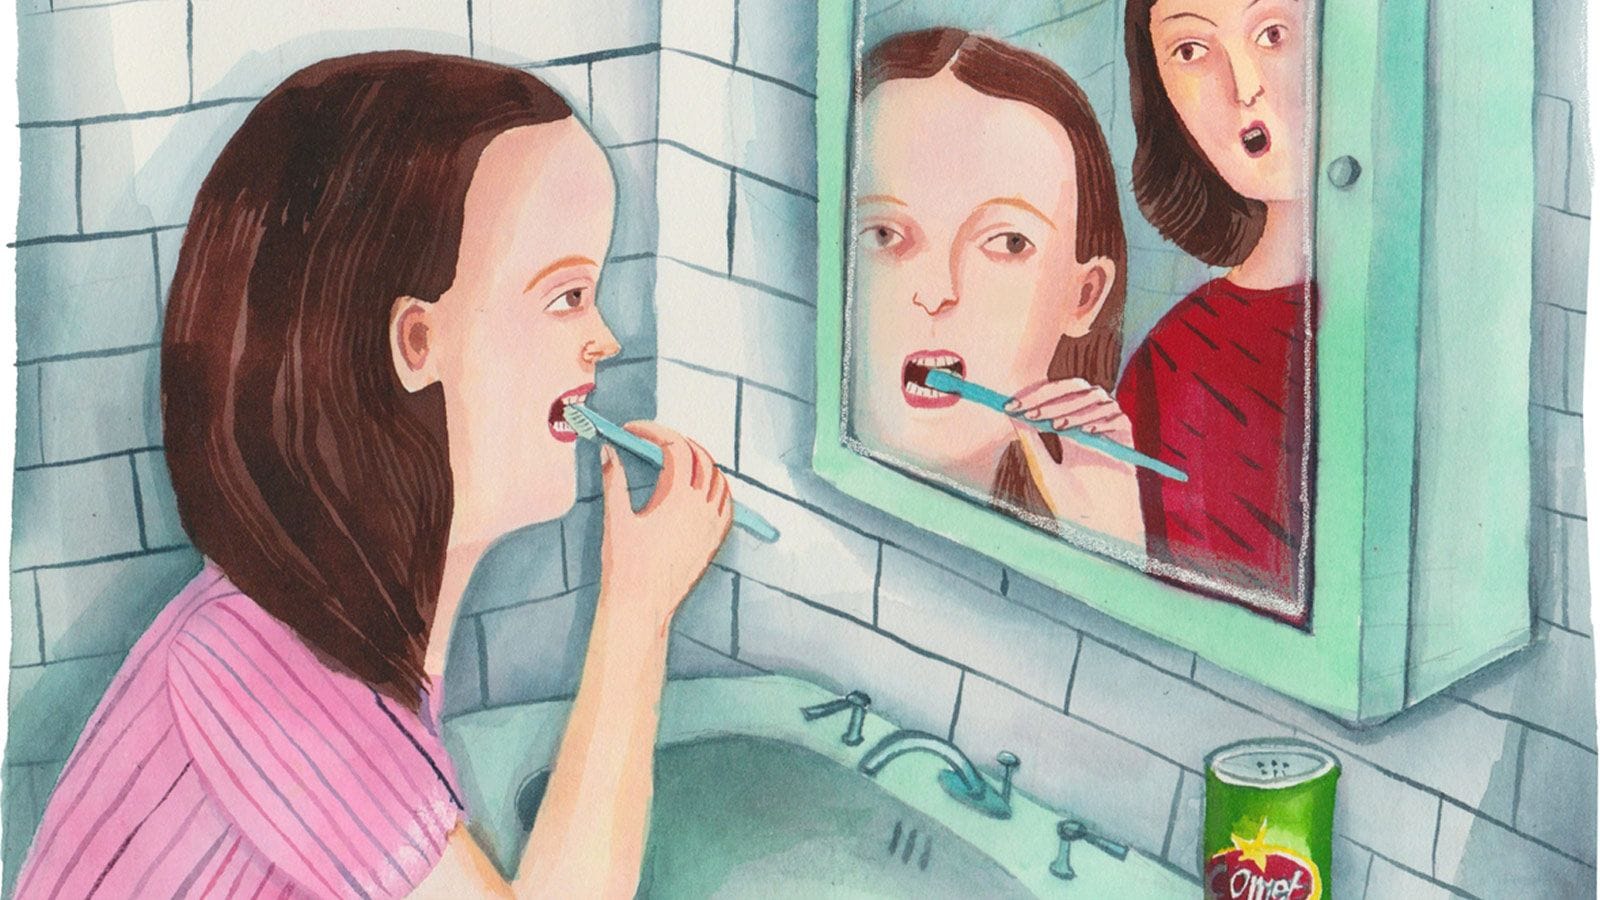 私の歯を住宅用洗剤で磨かせた精神病の母へ The New York Times 東洋経済オンライン 経済ニュースの新基準